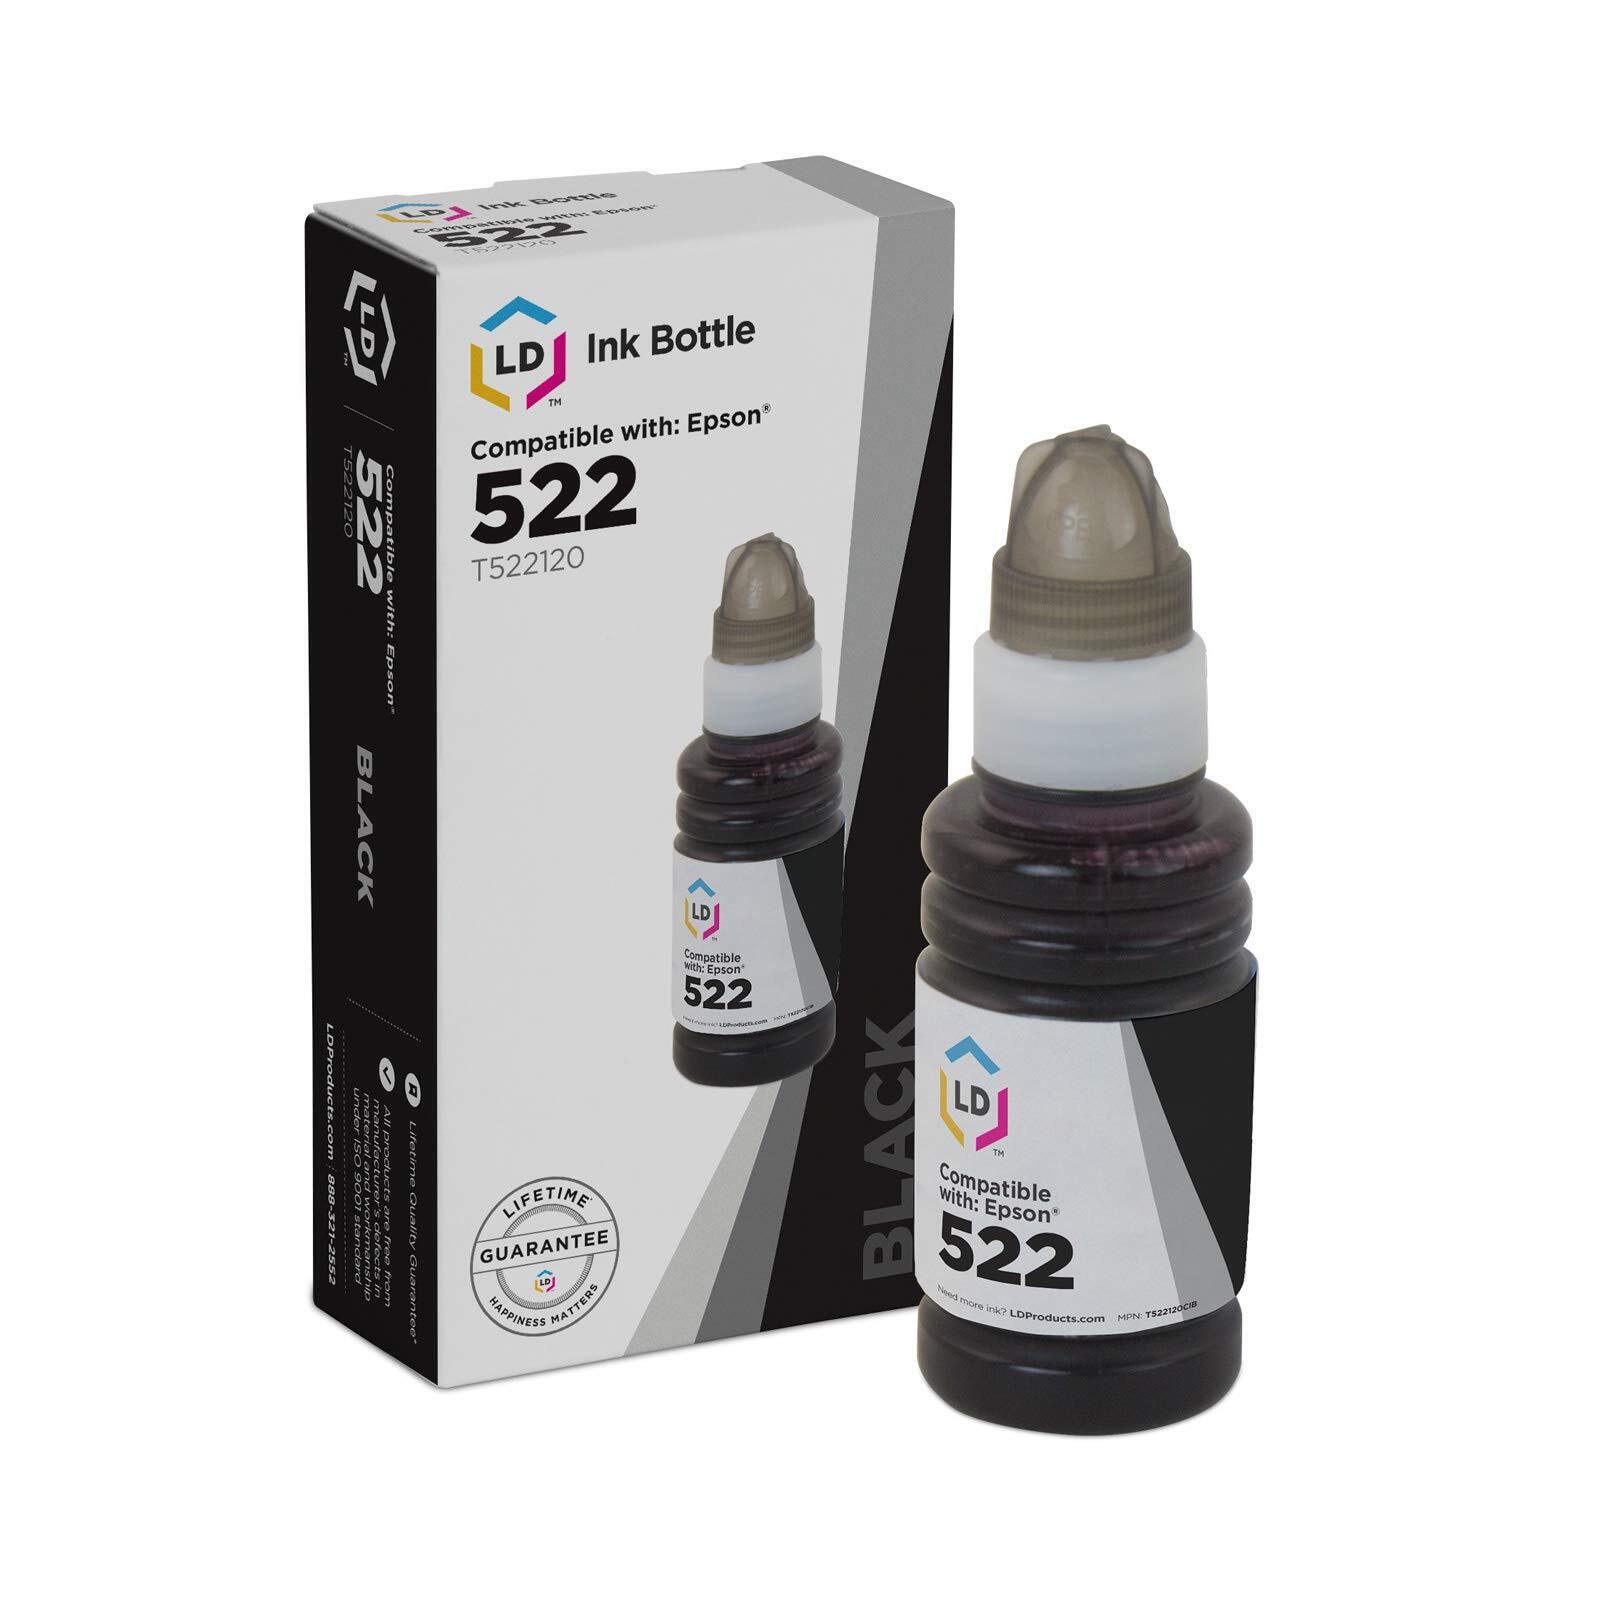 LD Compatible Epson 522 / T522120 EcoTank Black Ink Bottle for ET-2720 & ET-4700